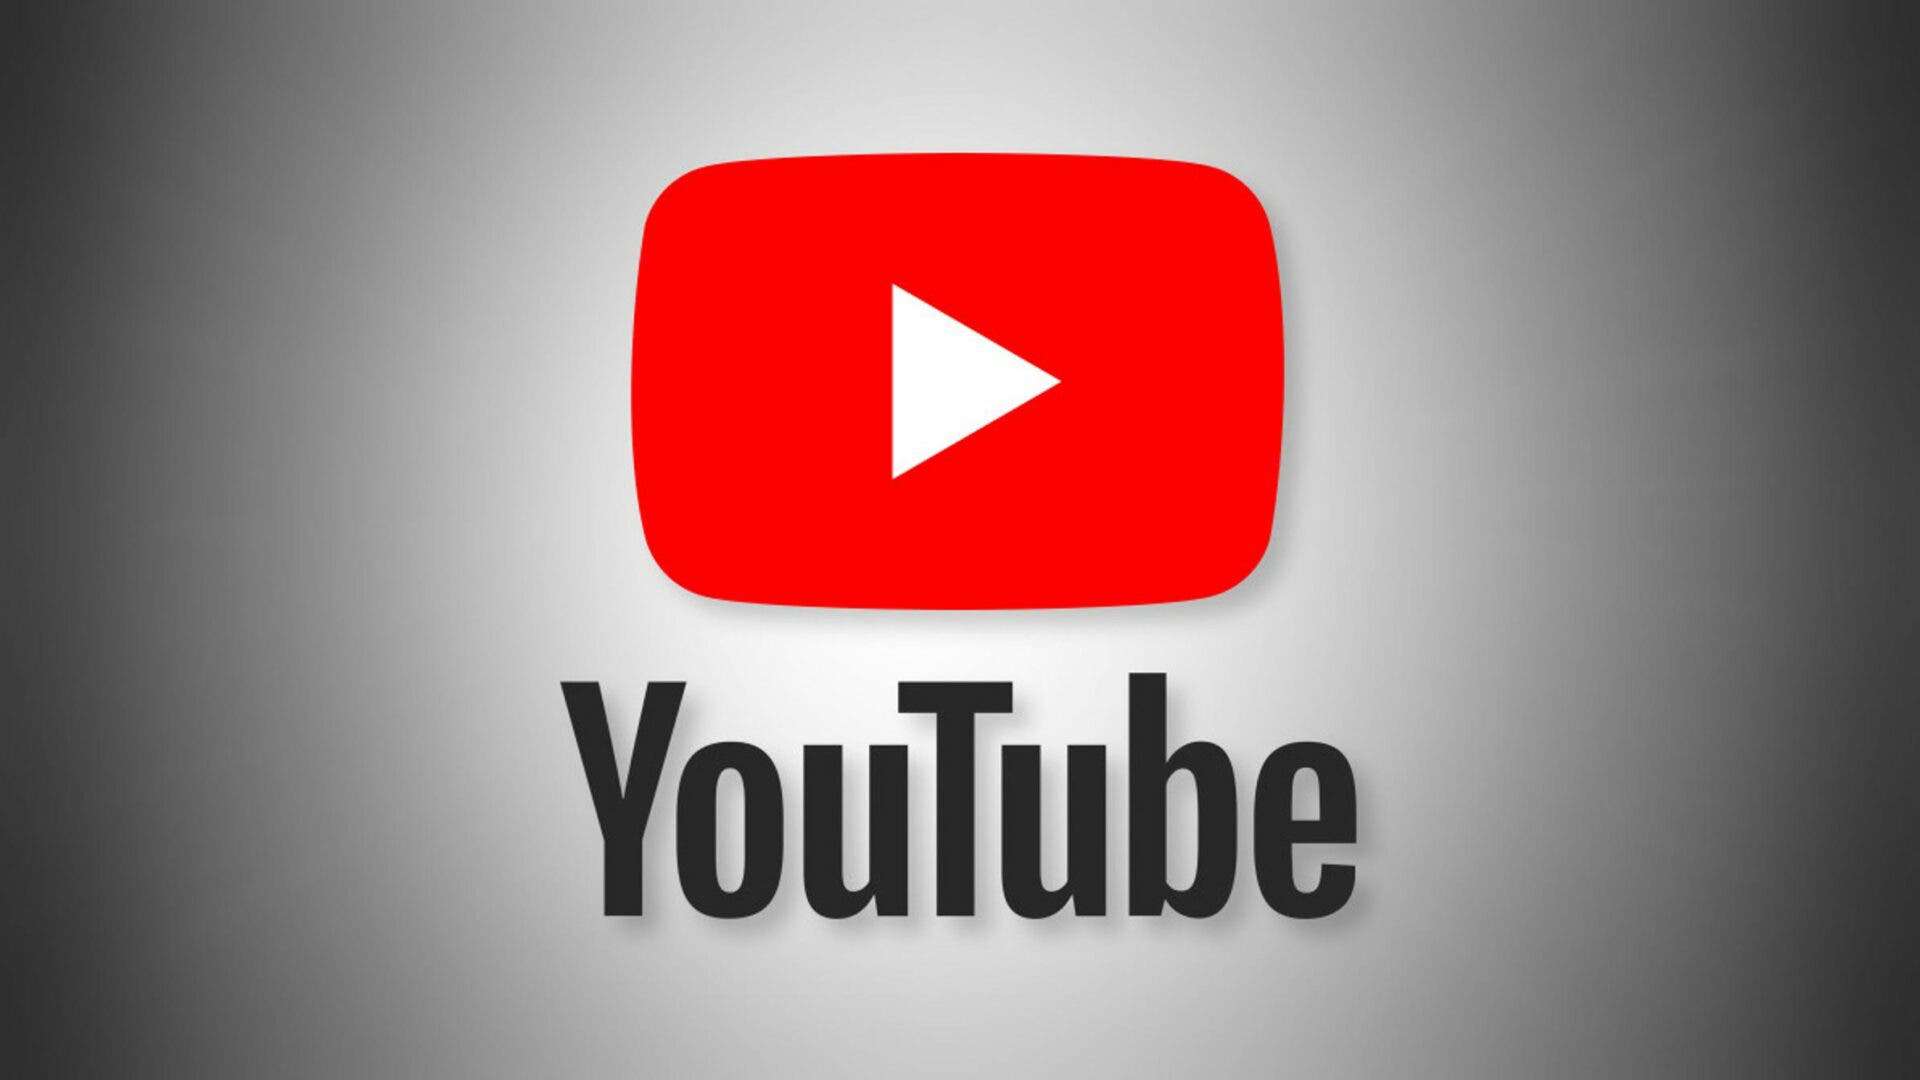 یوتیوب حالت آزمایشی اشتراک پریمیوم برای پخش ویدیو 4K را لغو کرد